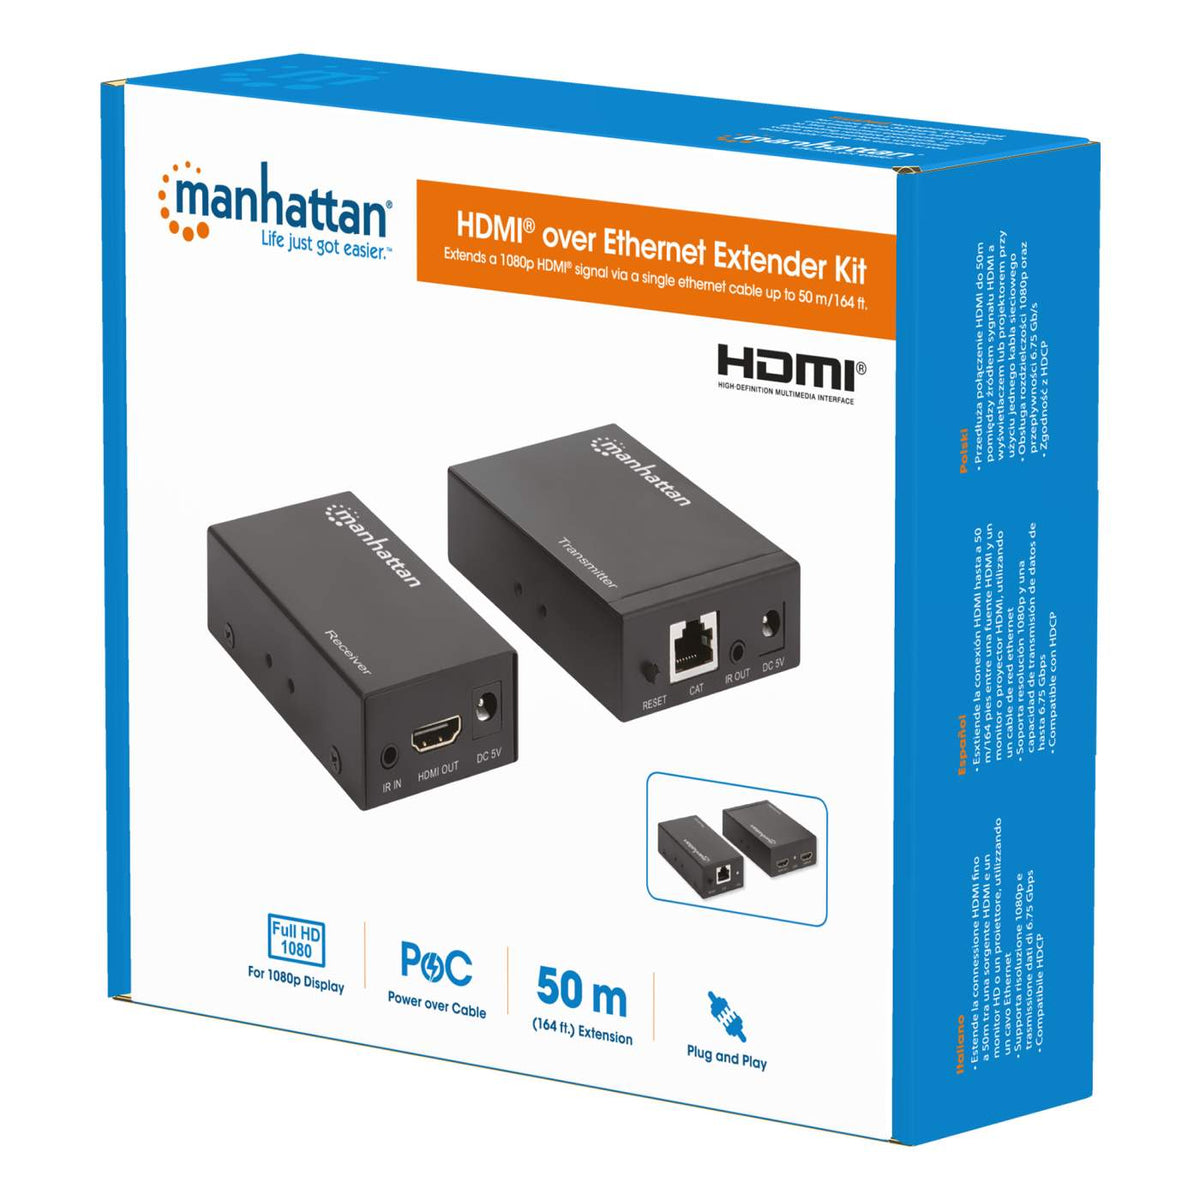 Manhattan 1080p over Ethernet Extender Kit